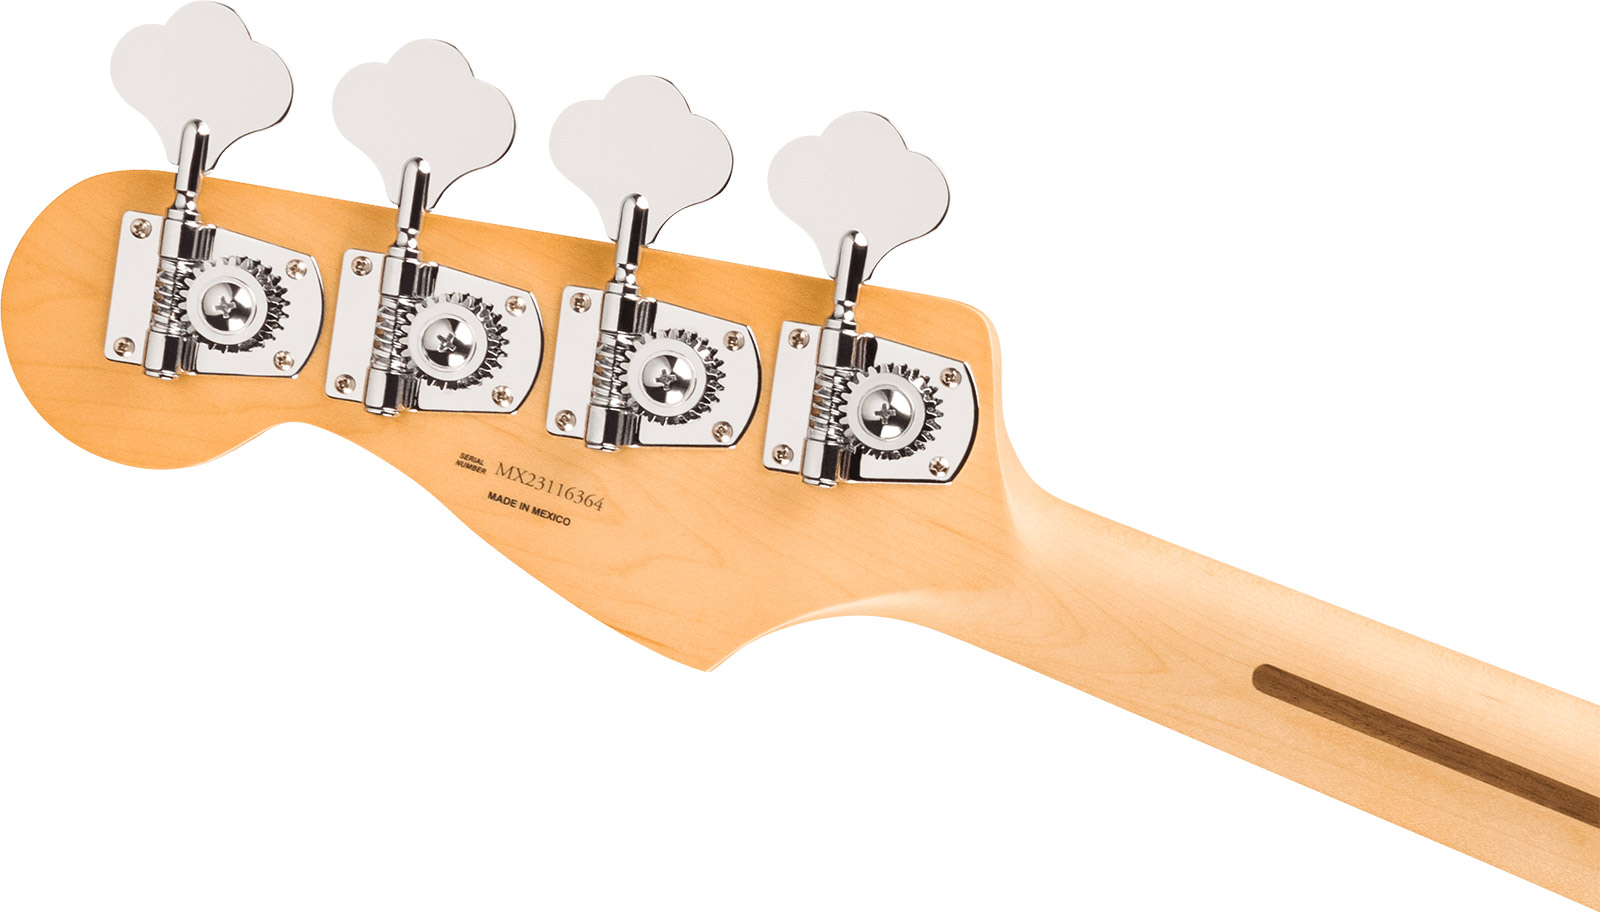 Fender Jazz Bass Player Mex Ltd Pf - Pacific Peach - Solid body elektrische bas - Variation 3